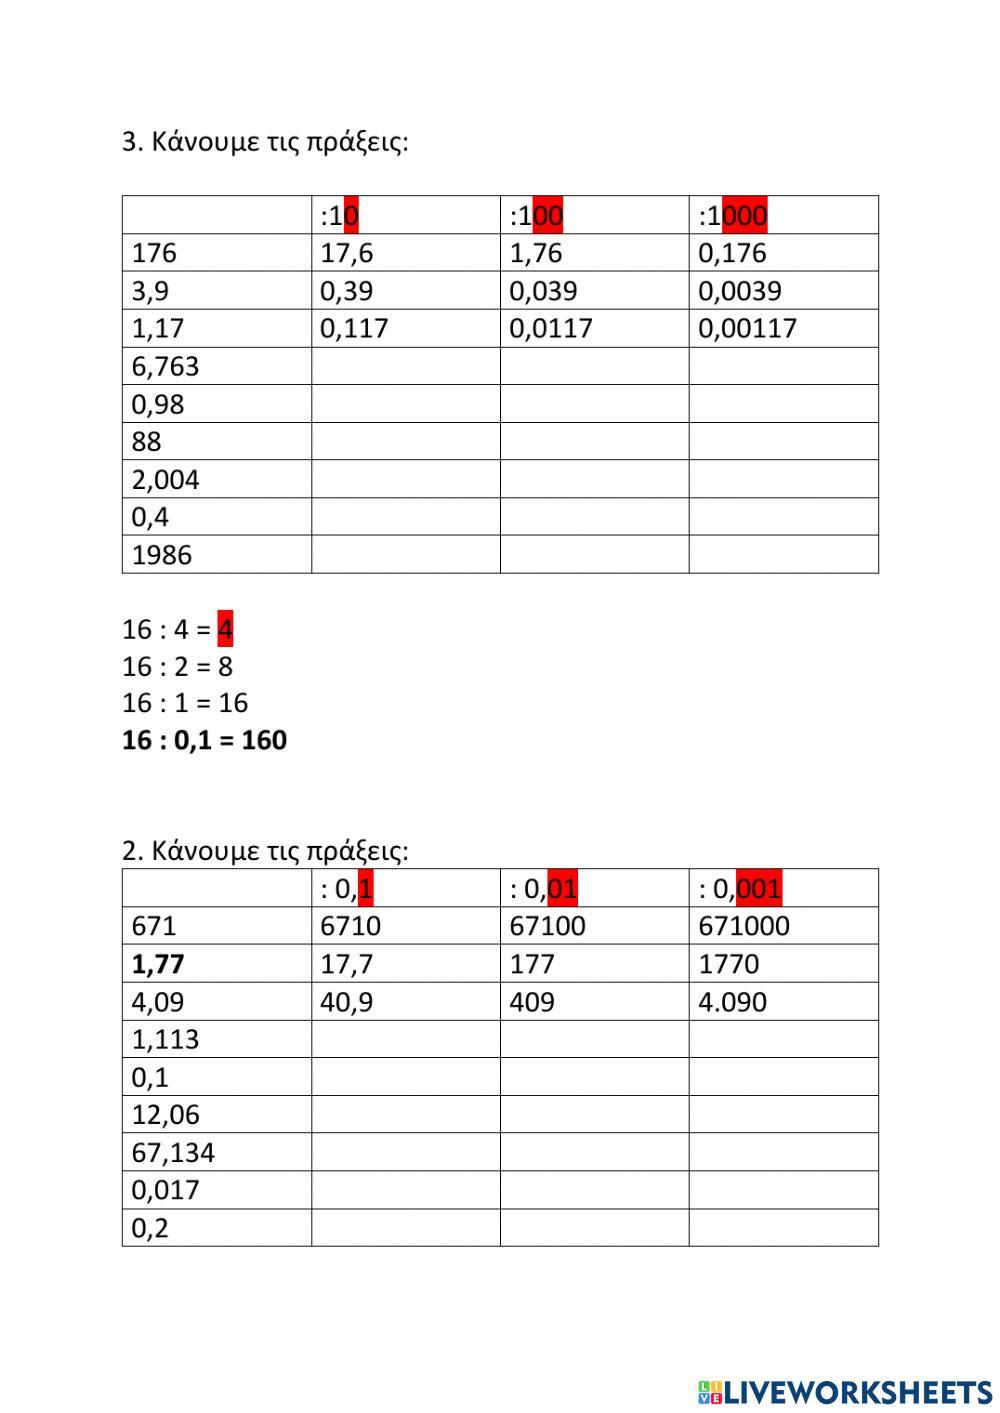 Πολλαπλασιασμοί και διαιρέσεις με πολλαπλάσια και υποπολλαπλάσια του 10